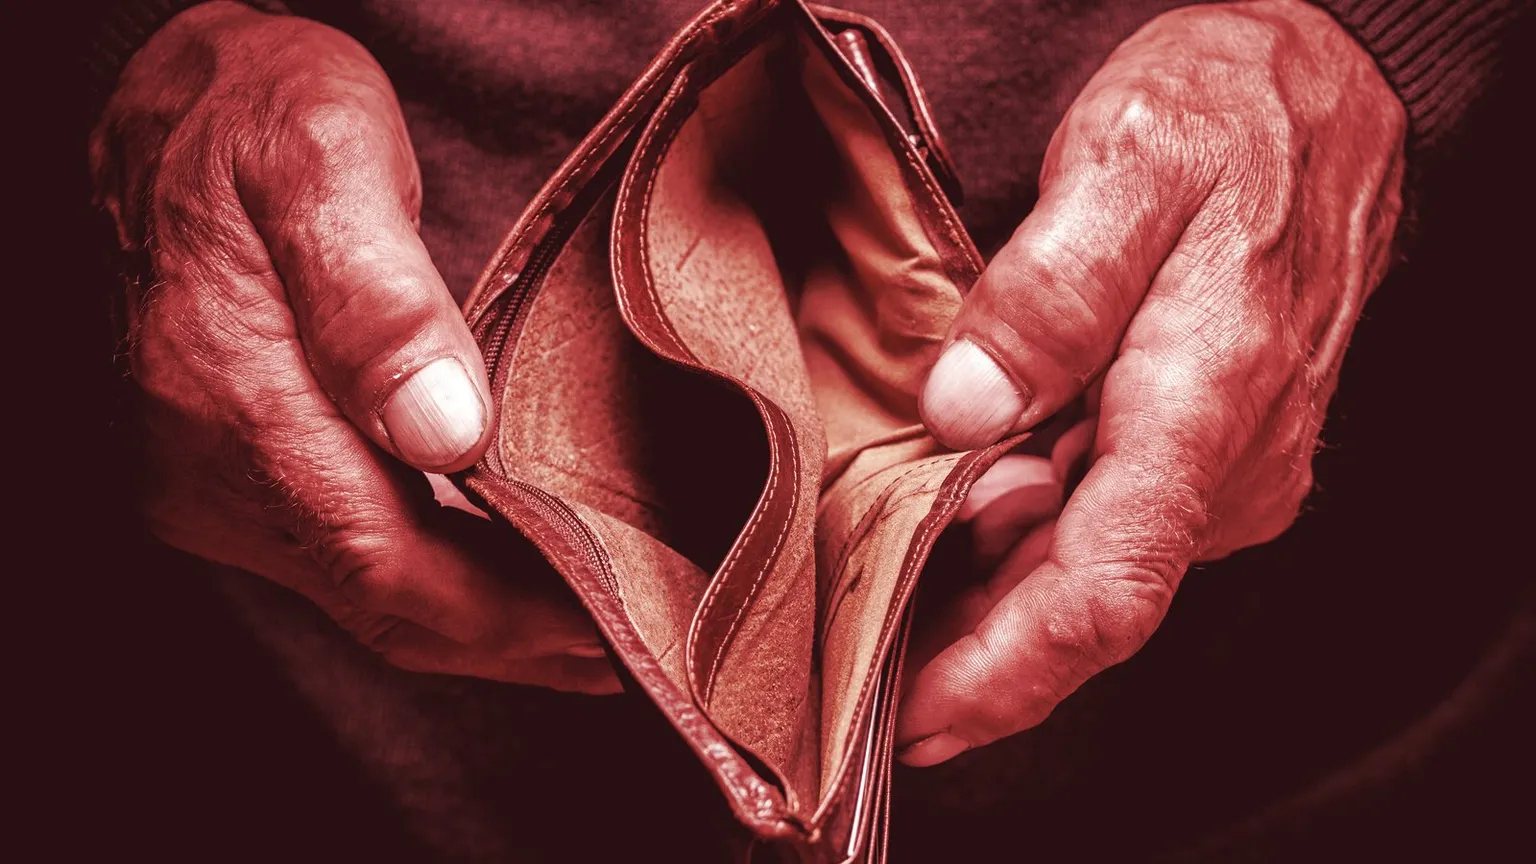 An empty wallet. Image: Shutterstock